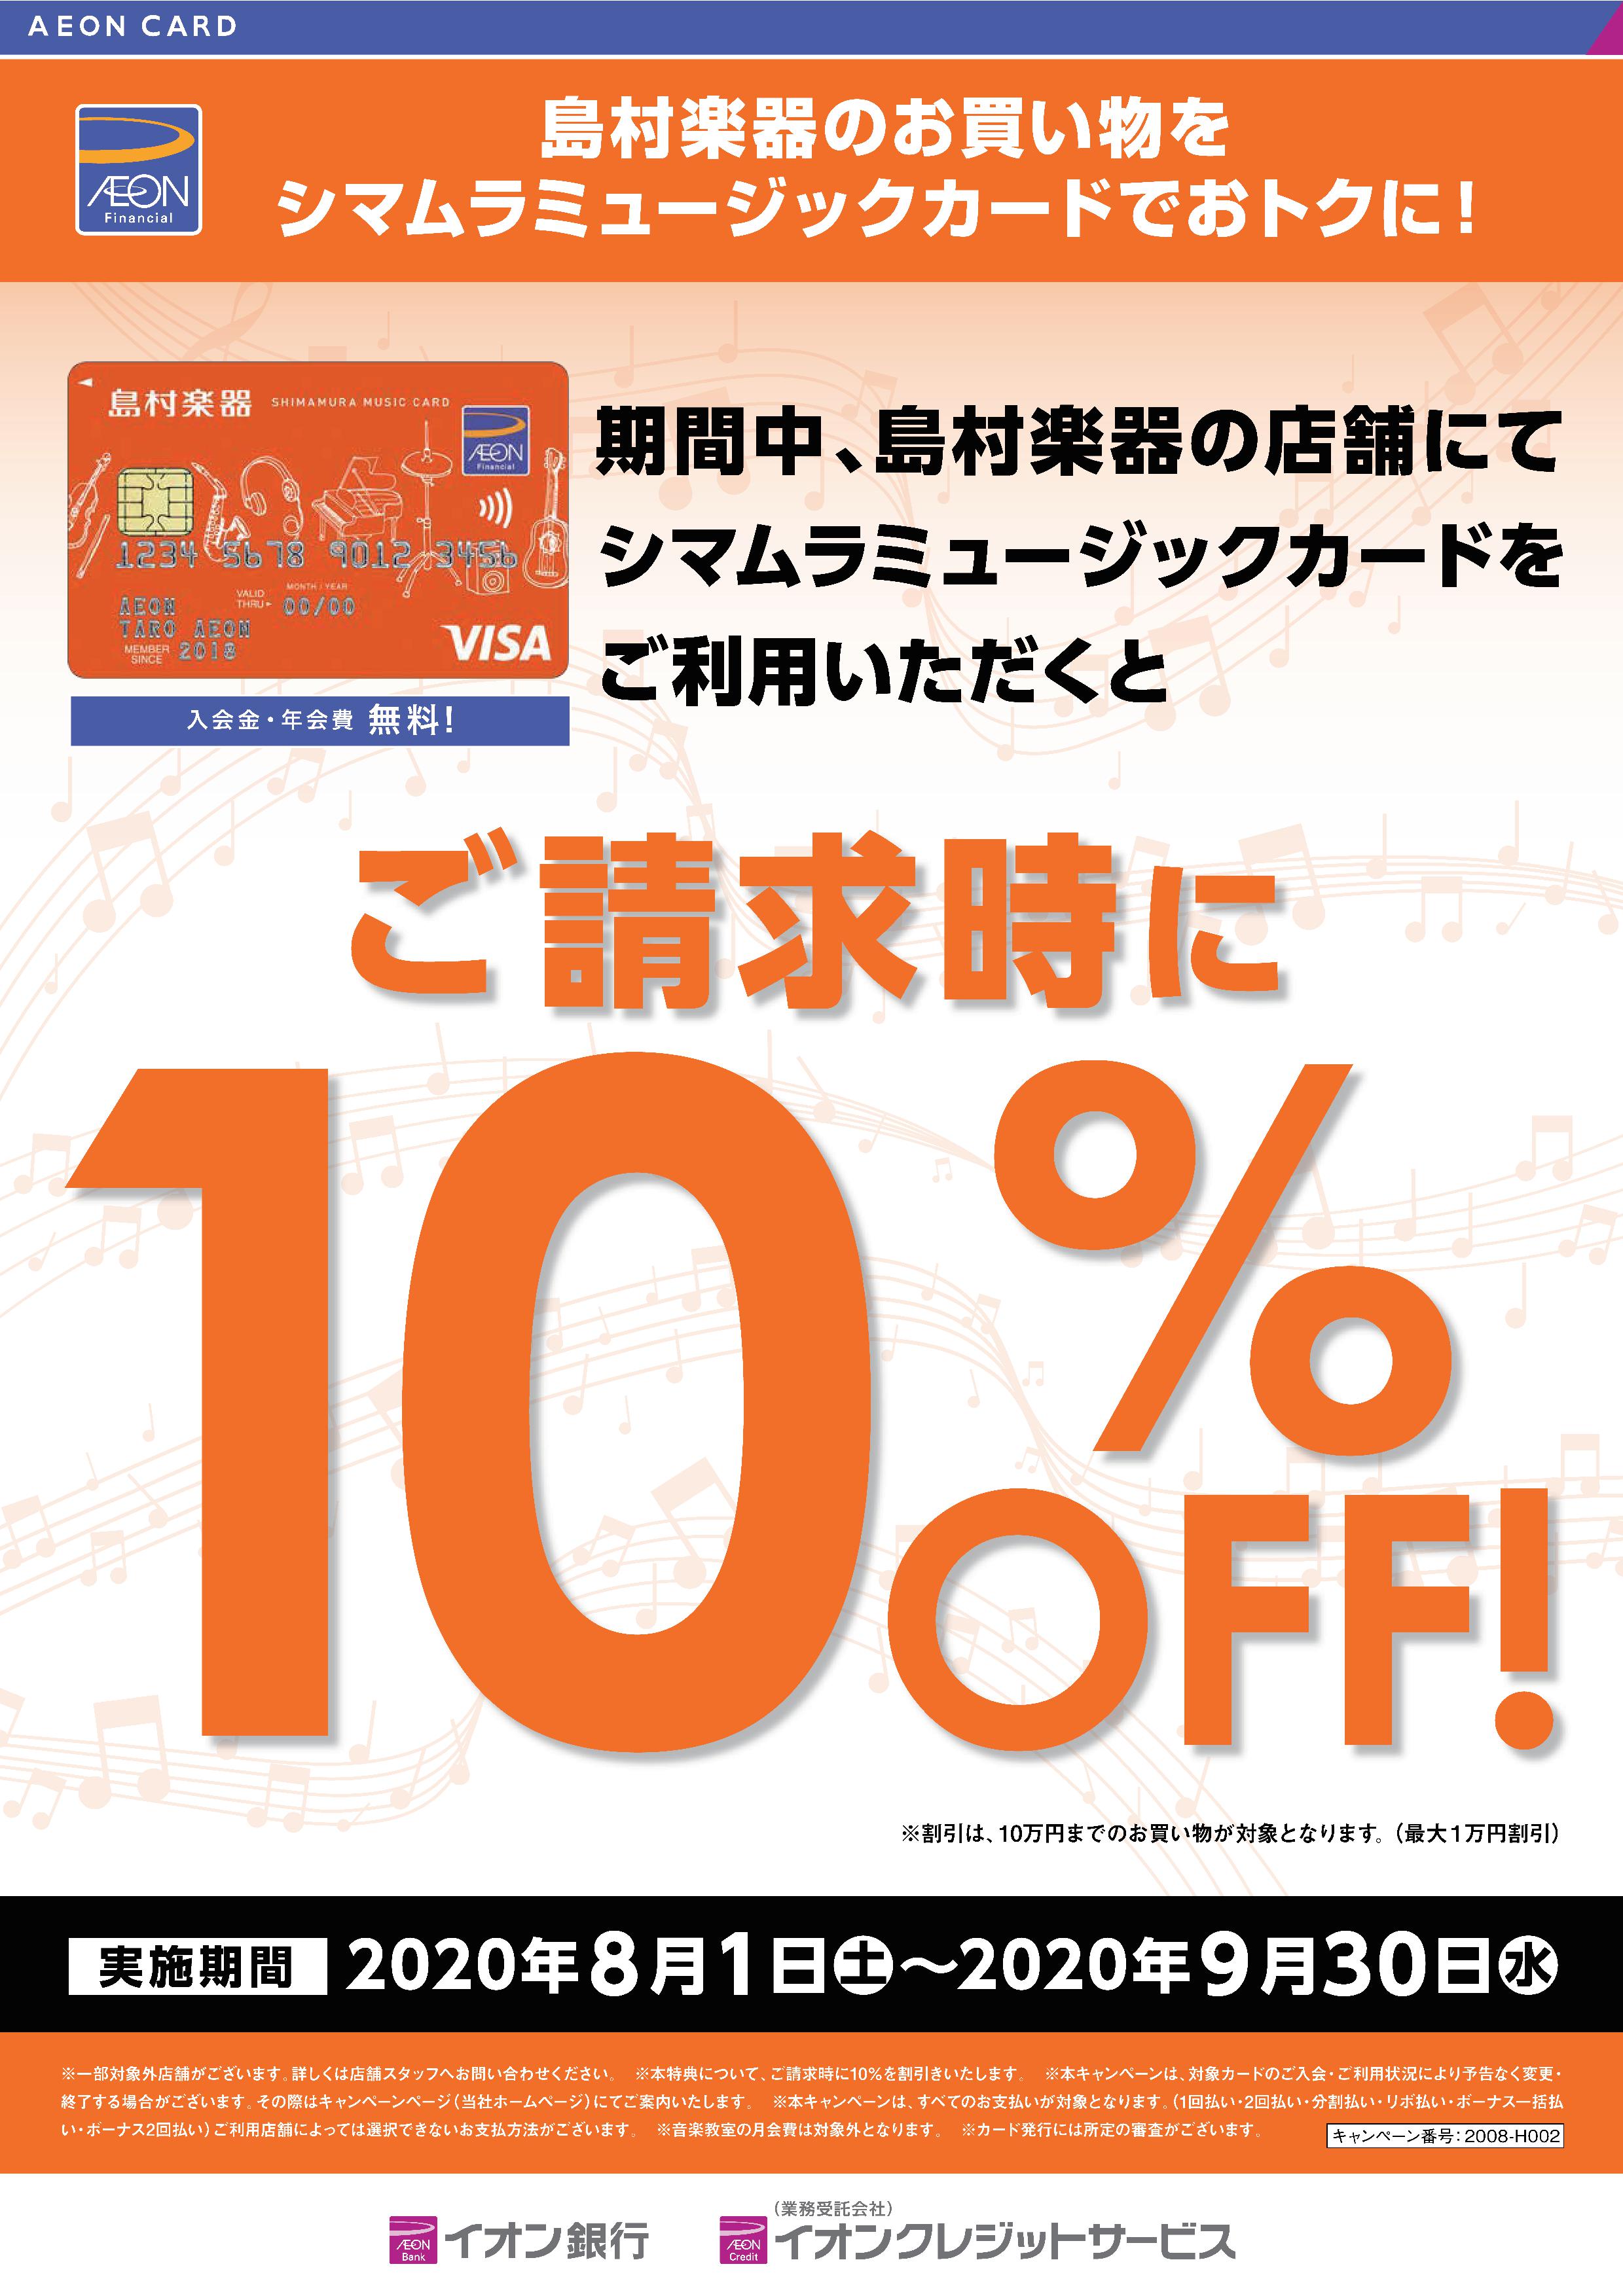 シマムラミュージックカードで10%OFFキャンぺーン開催!!